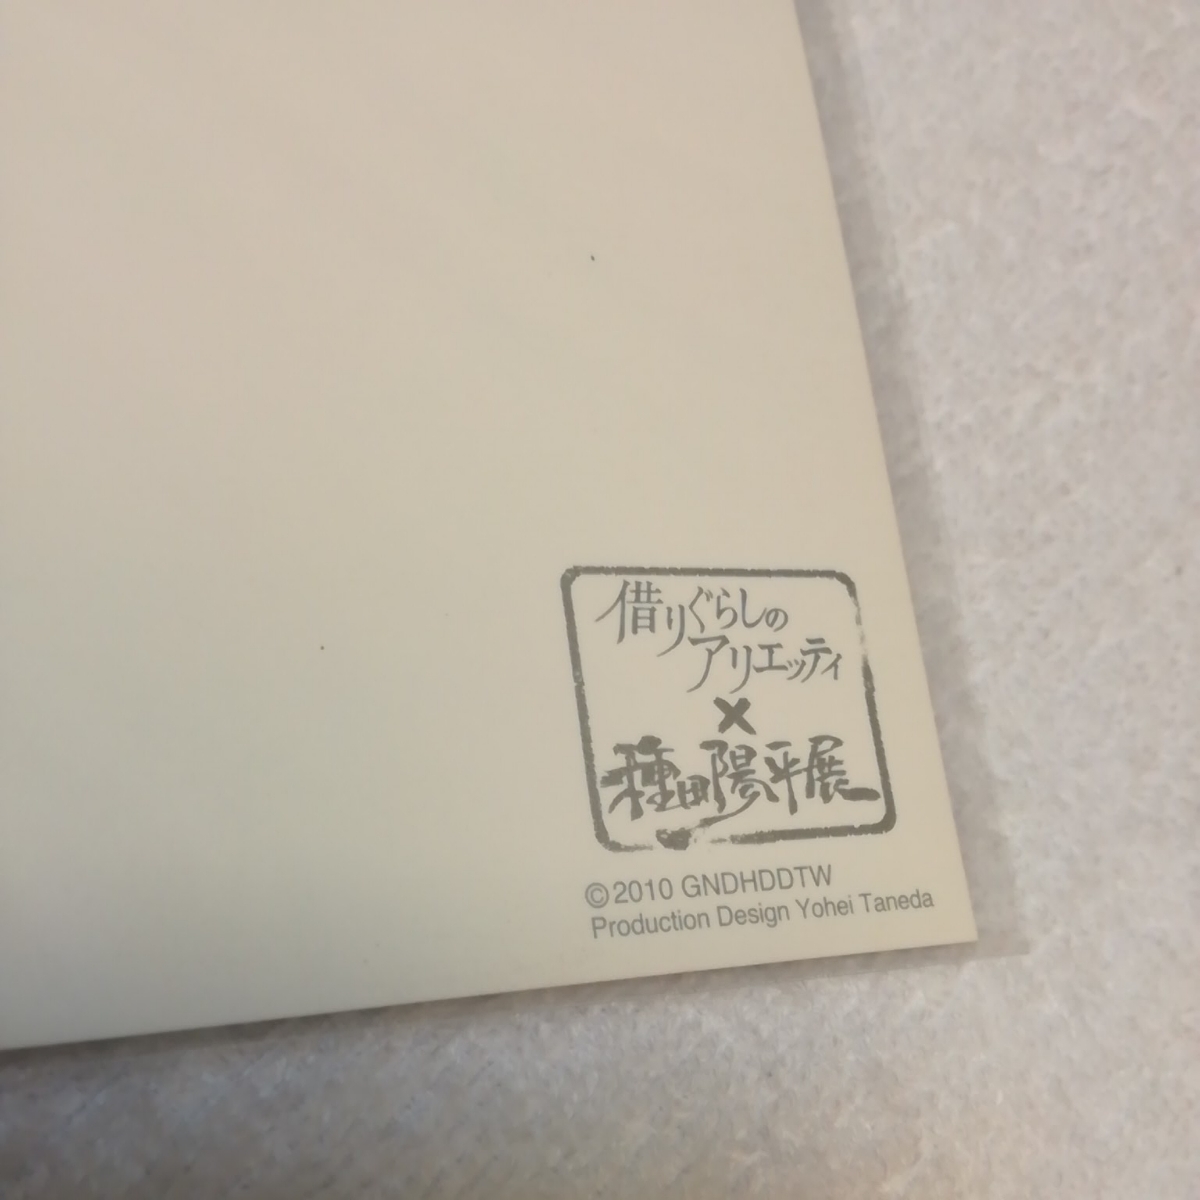  трудно найти!! Studio Ghibli ...... есть eti[ Event ограничение ] открытка Miyazaki . вид рисовое поле Youhei расположение выставка. карта. рис ...f